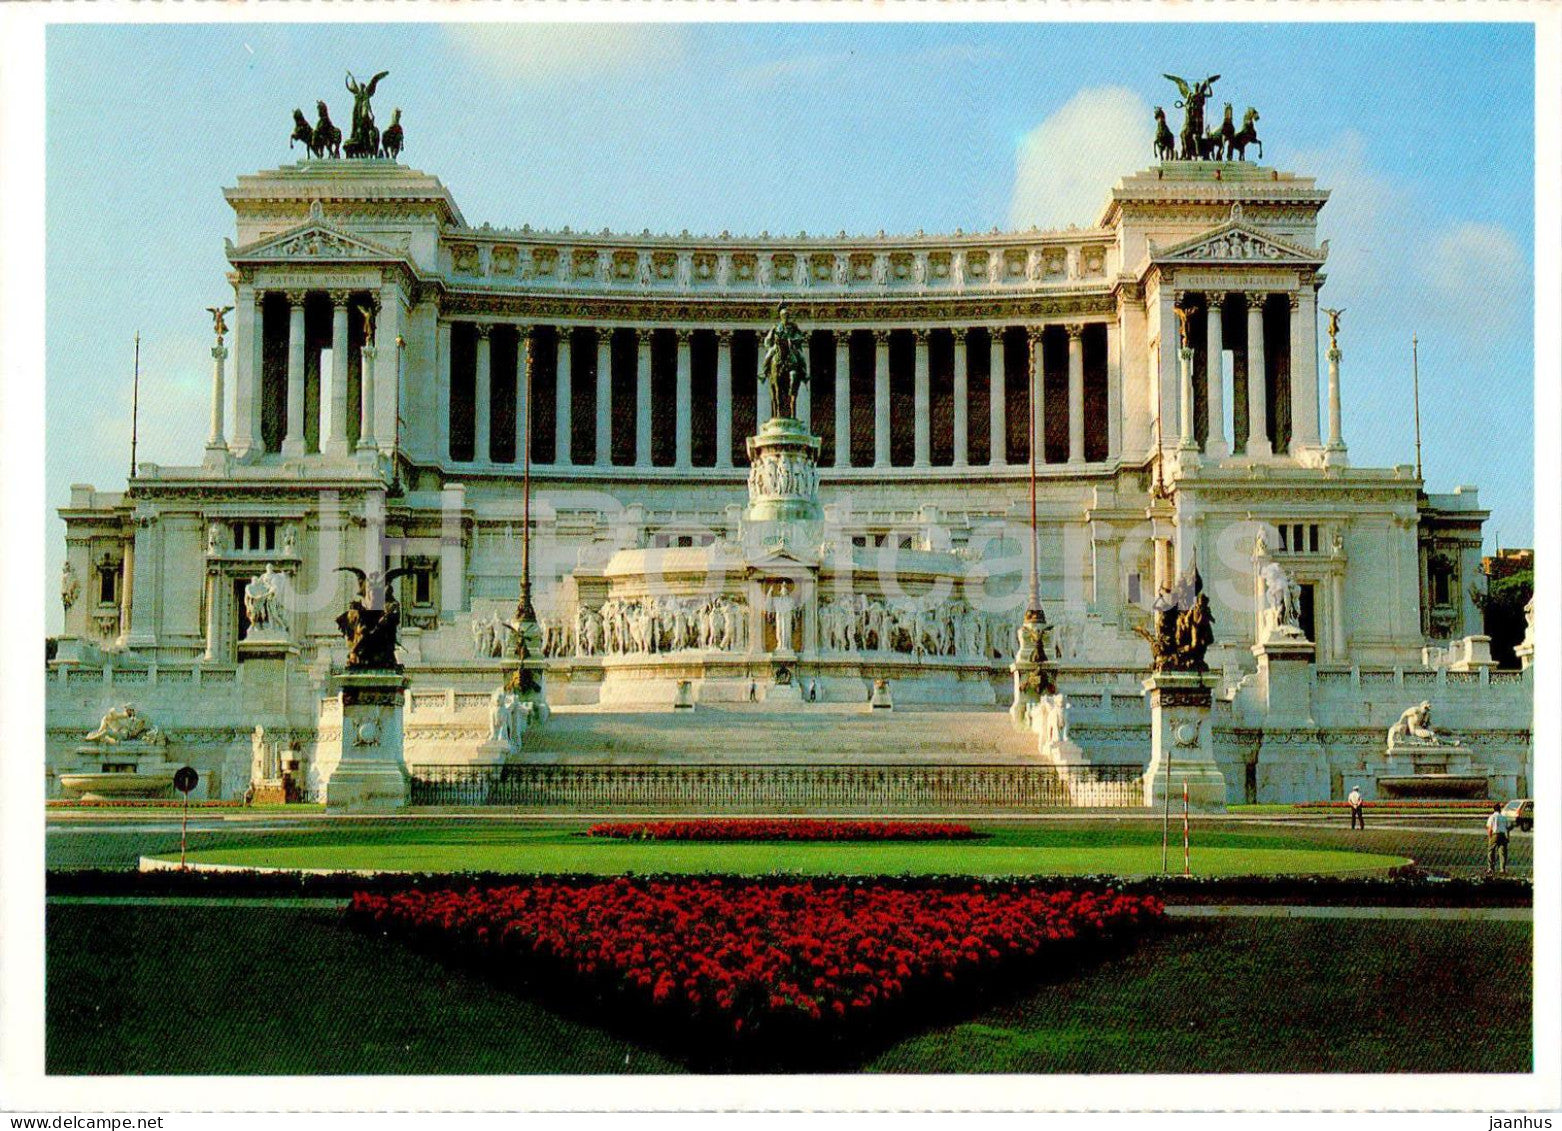 Monument of Vittorio Emanuele II